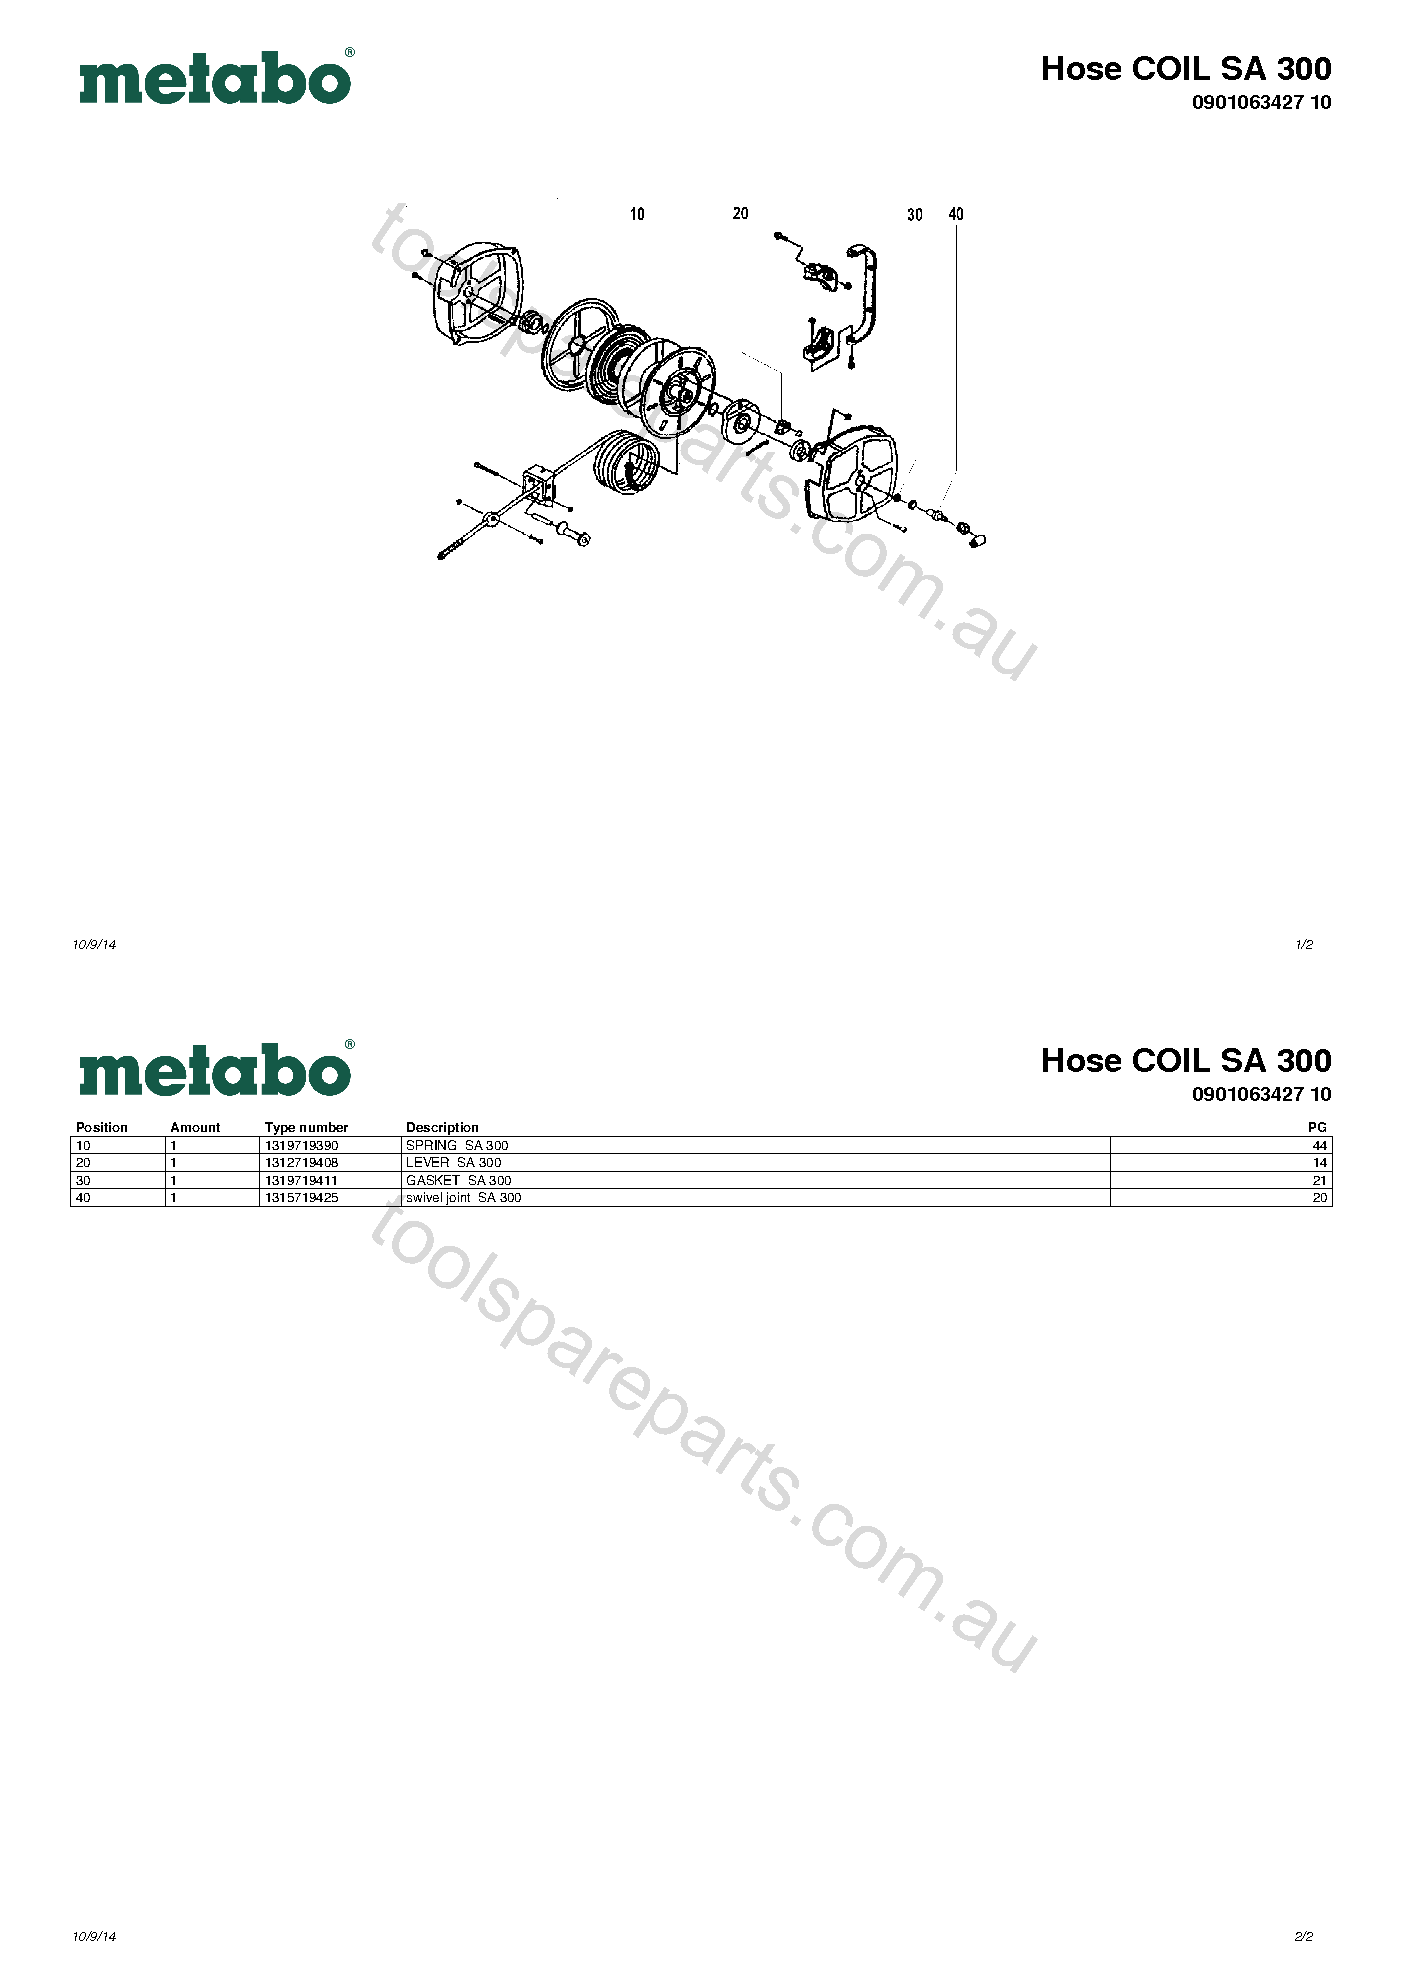 Metabo Hose COIL SA 300 0901063427 10  Diagram 1